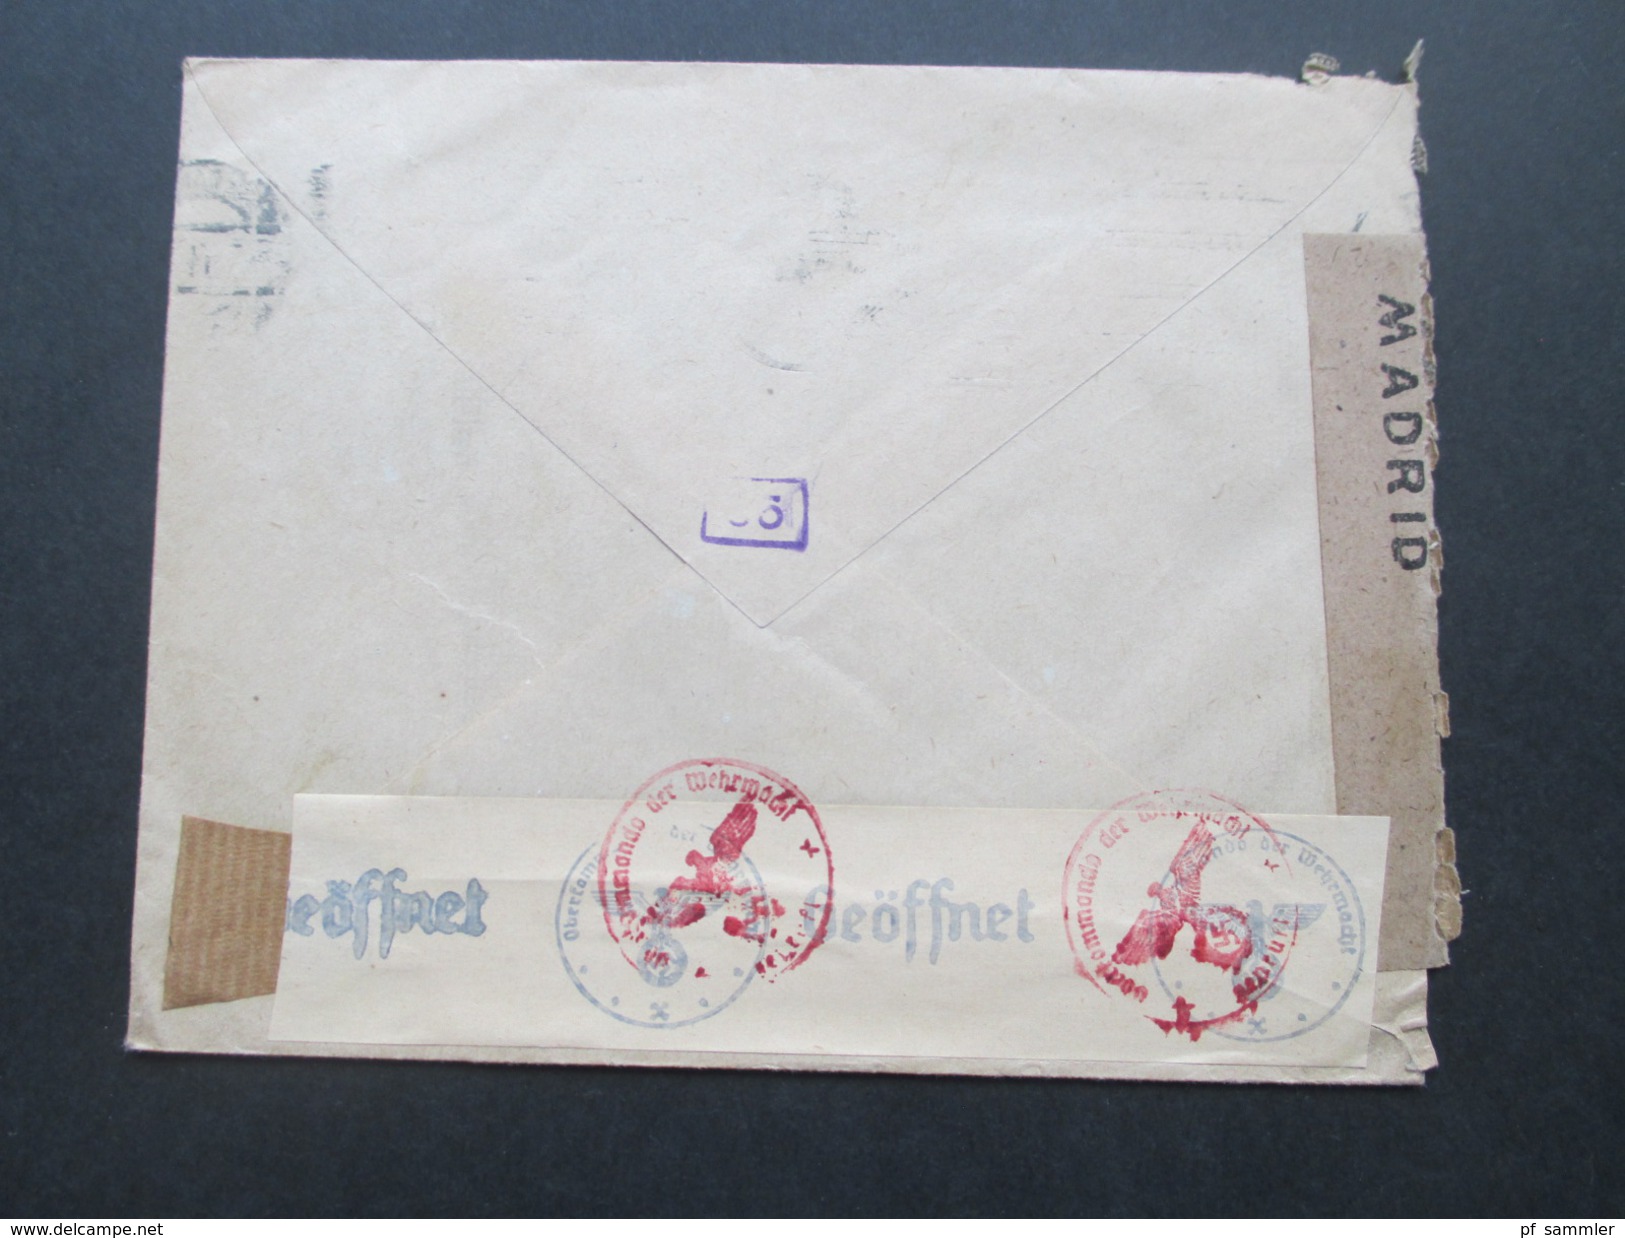 Spanien - Schweiz 1943 Zensur Der Wehrmacht. Zensurbeleg. Geöffnet / Geprüft. Franco. Censura Gubernativa Madrid.Airmail - Covers & Documents